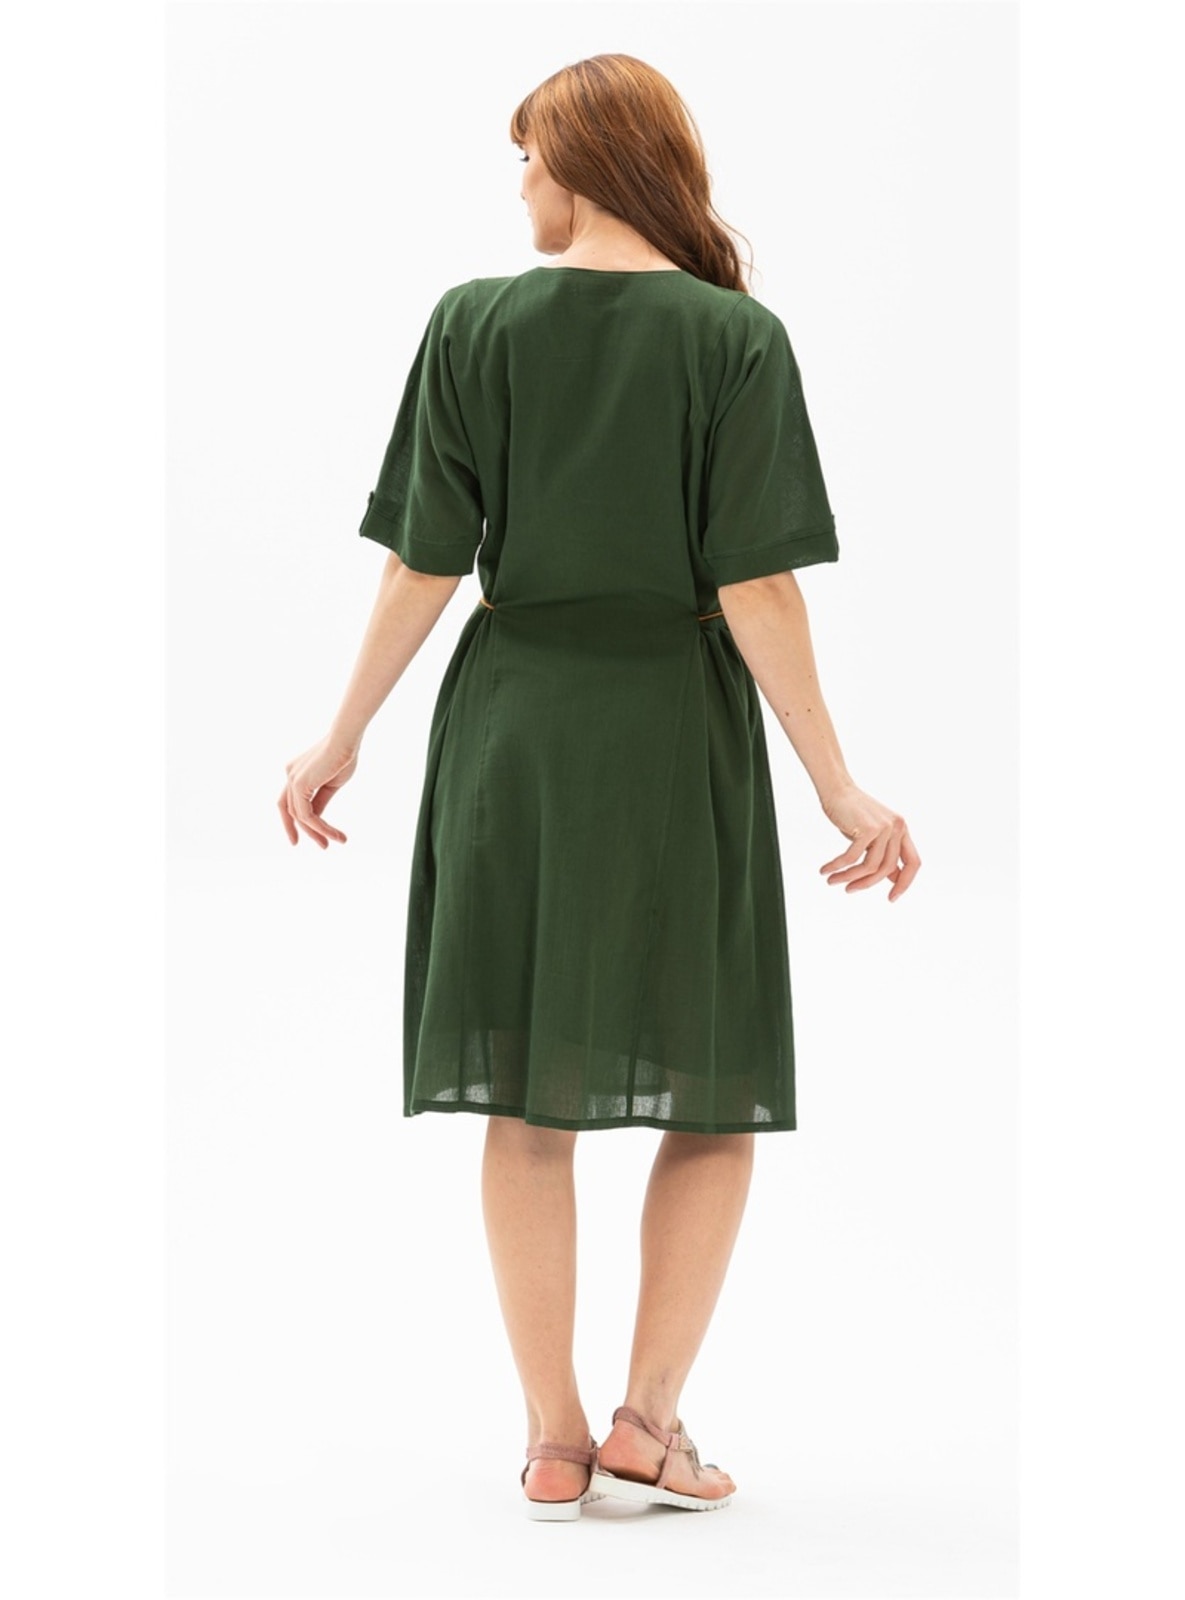 Green - Cotton - Crew neck - Modest Dress